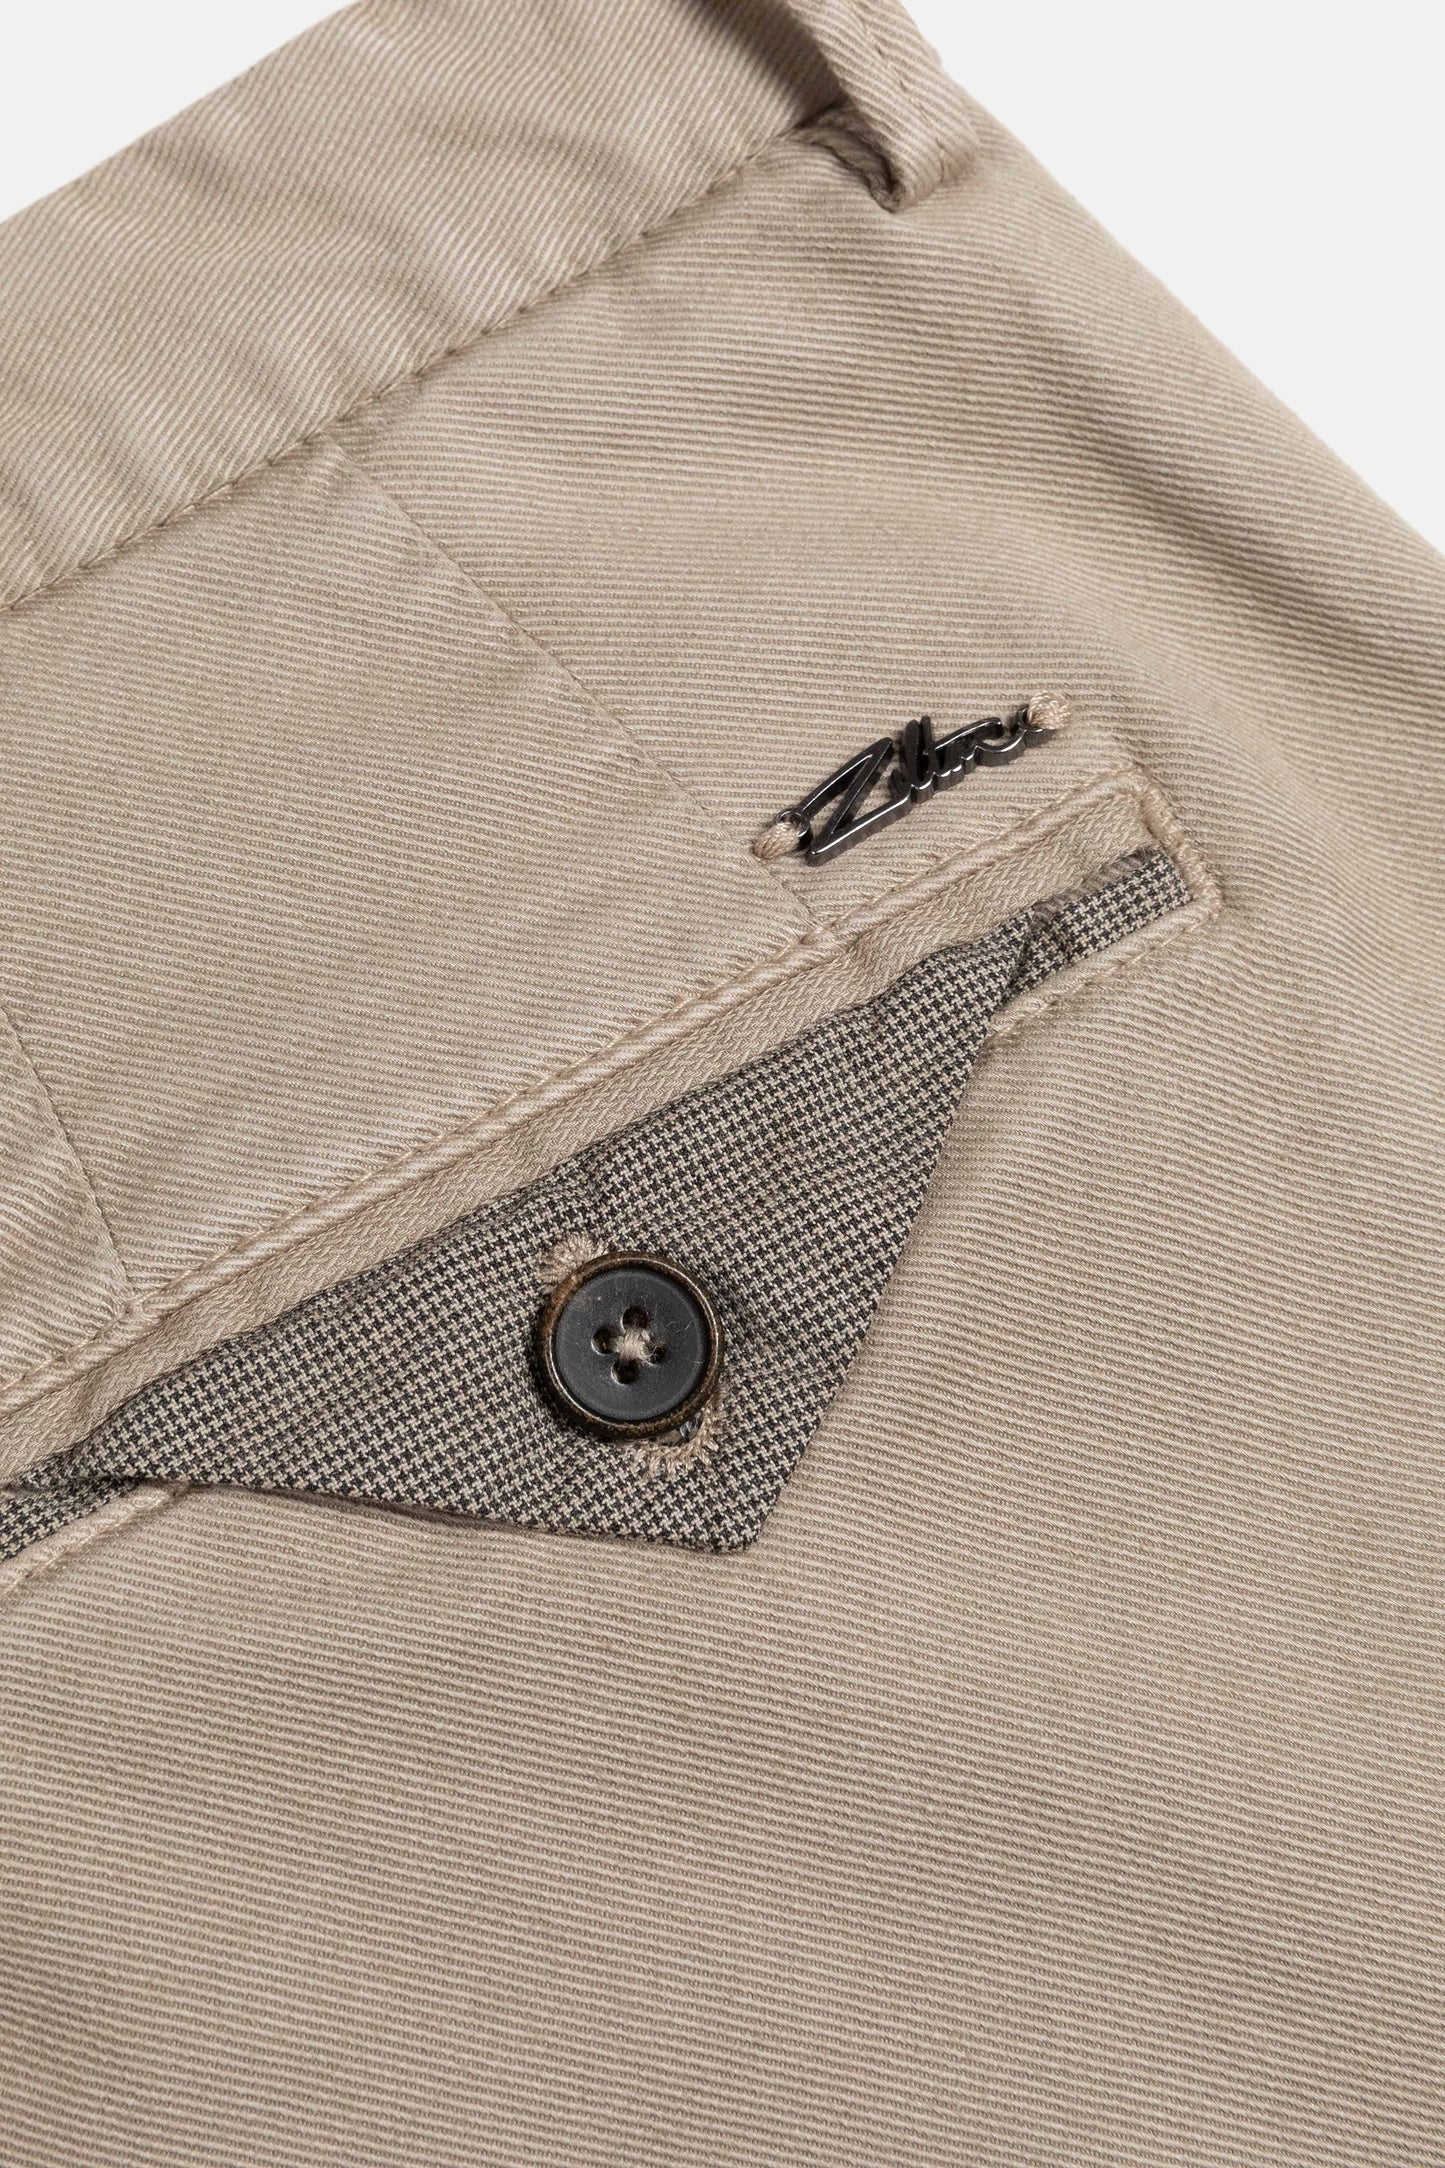 Sand cotton regular fit trousers Magnus Zilton - 23/410